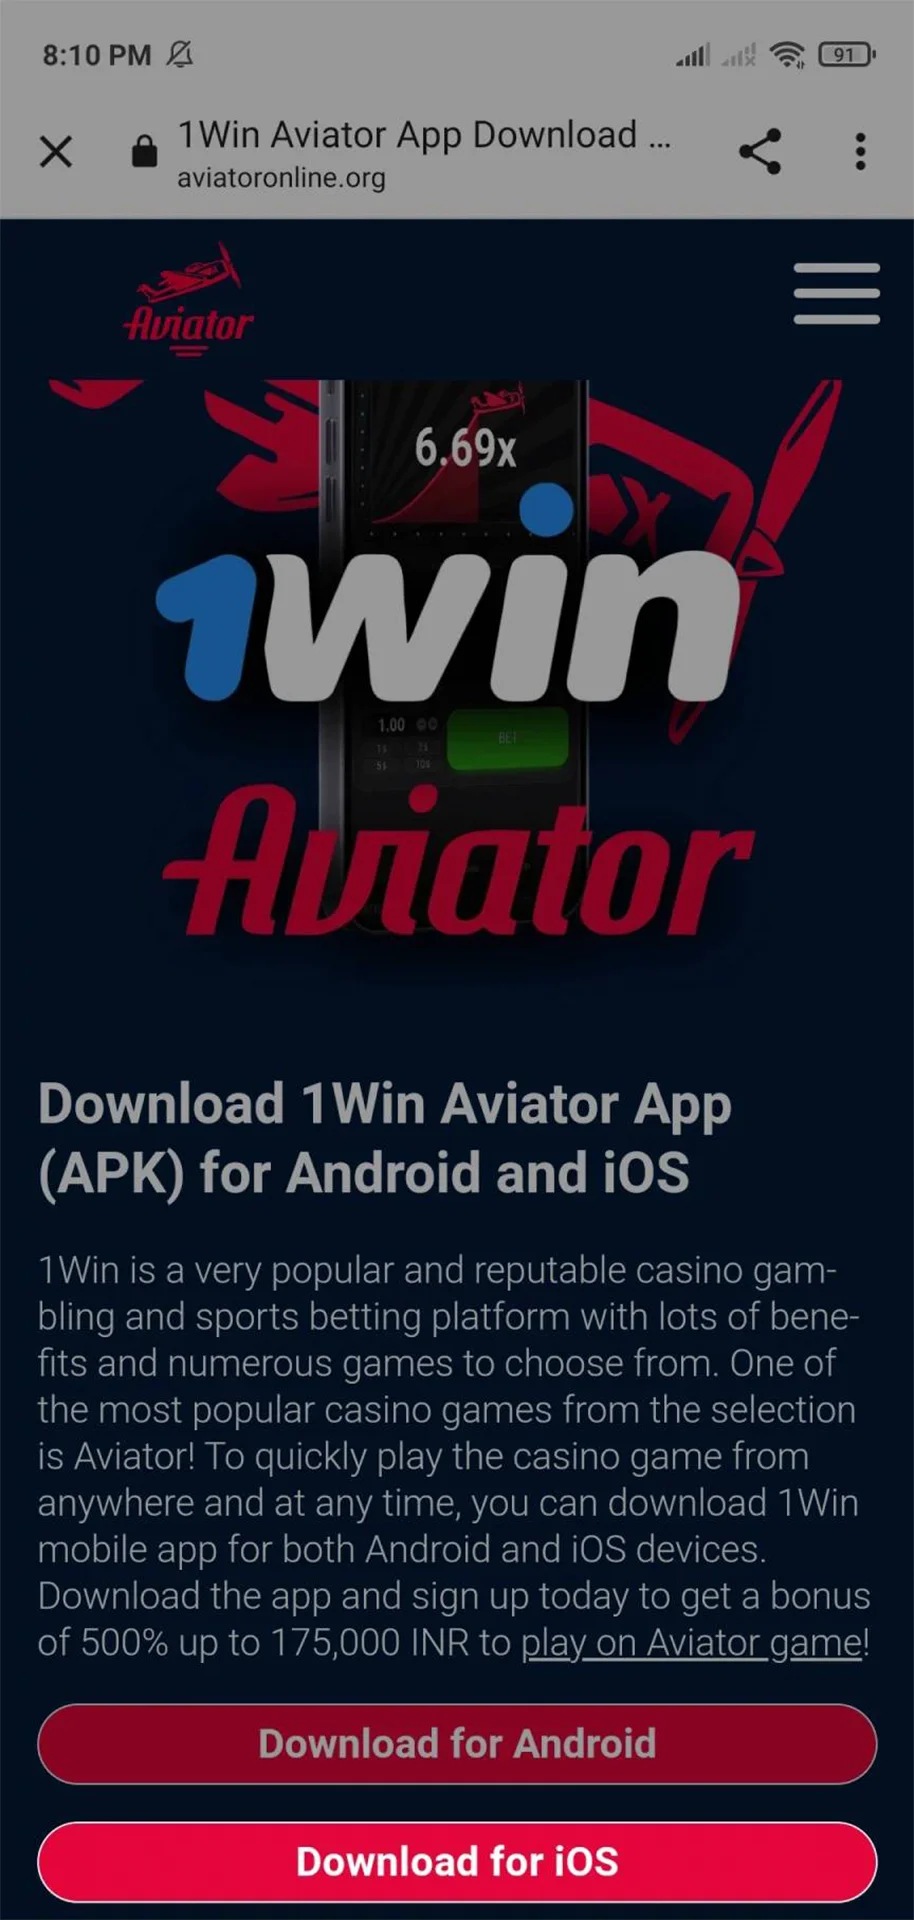 Siga o link para fazer o download do aplicativo 1win para iOS.